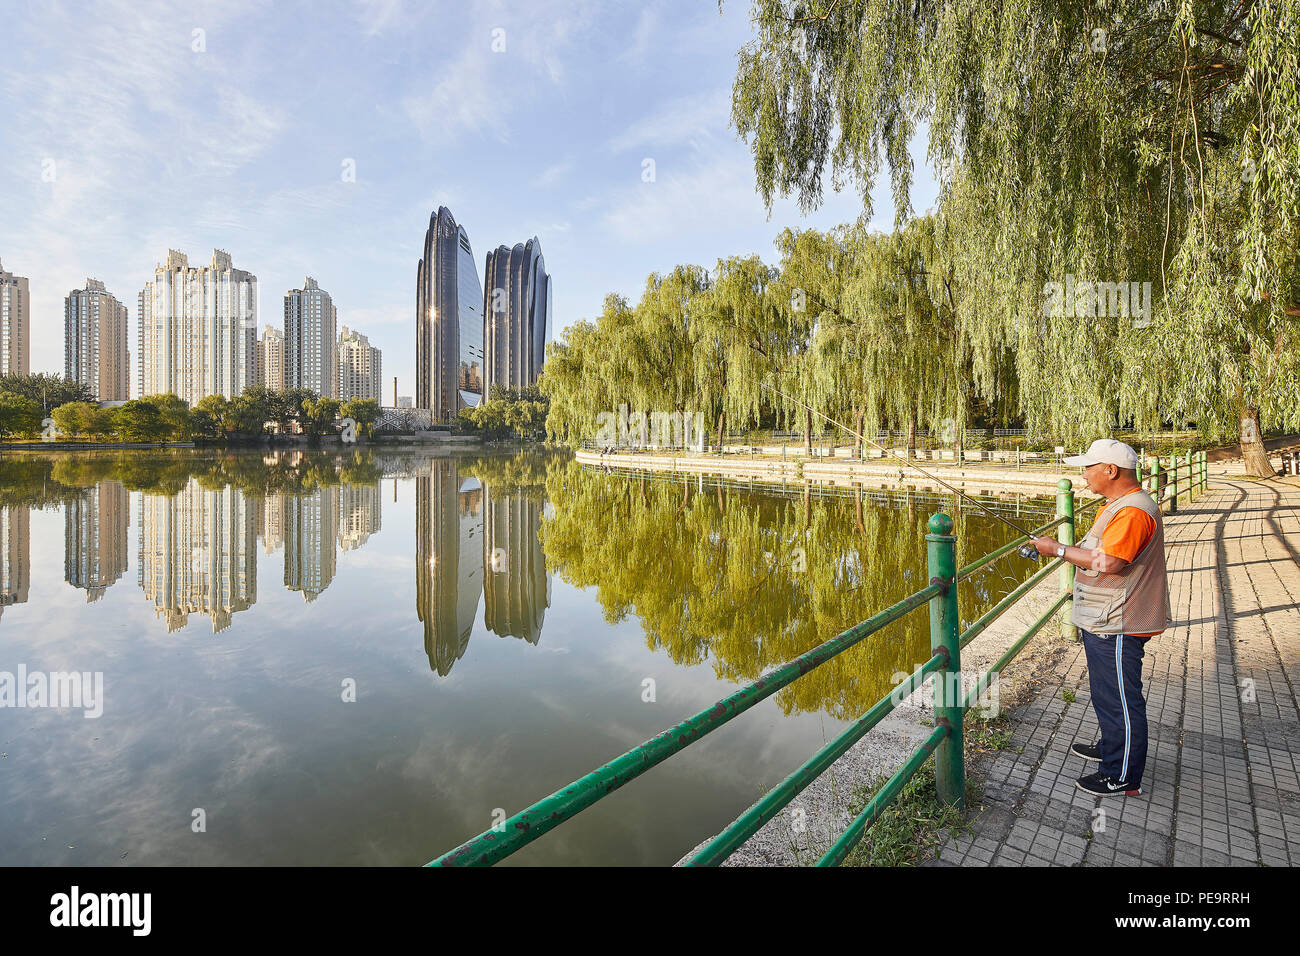 Le Parc Chaoyang Plaza, vue du lac de Parc de Chaoyang. Le Parc Chaoyang Plaza, Beijing, Chine. Architecte : MAD Architectes, 2017. Banque D'Images